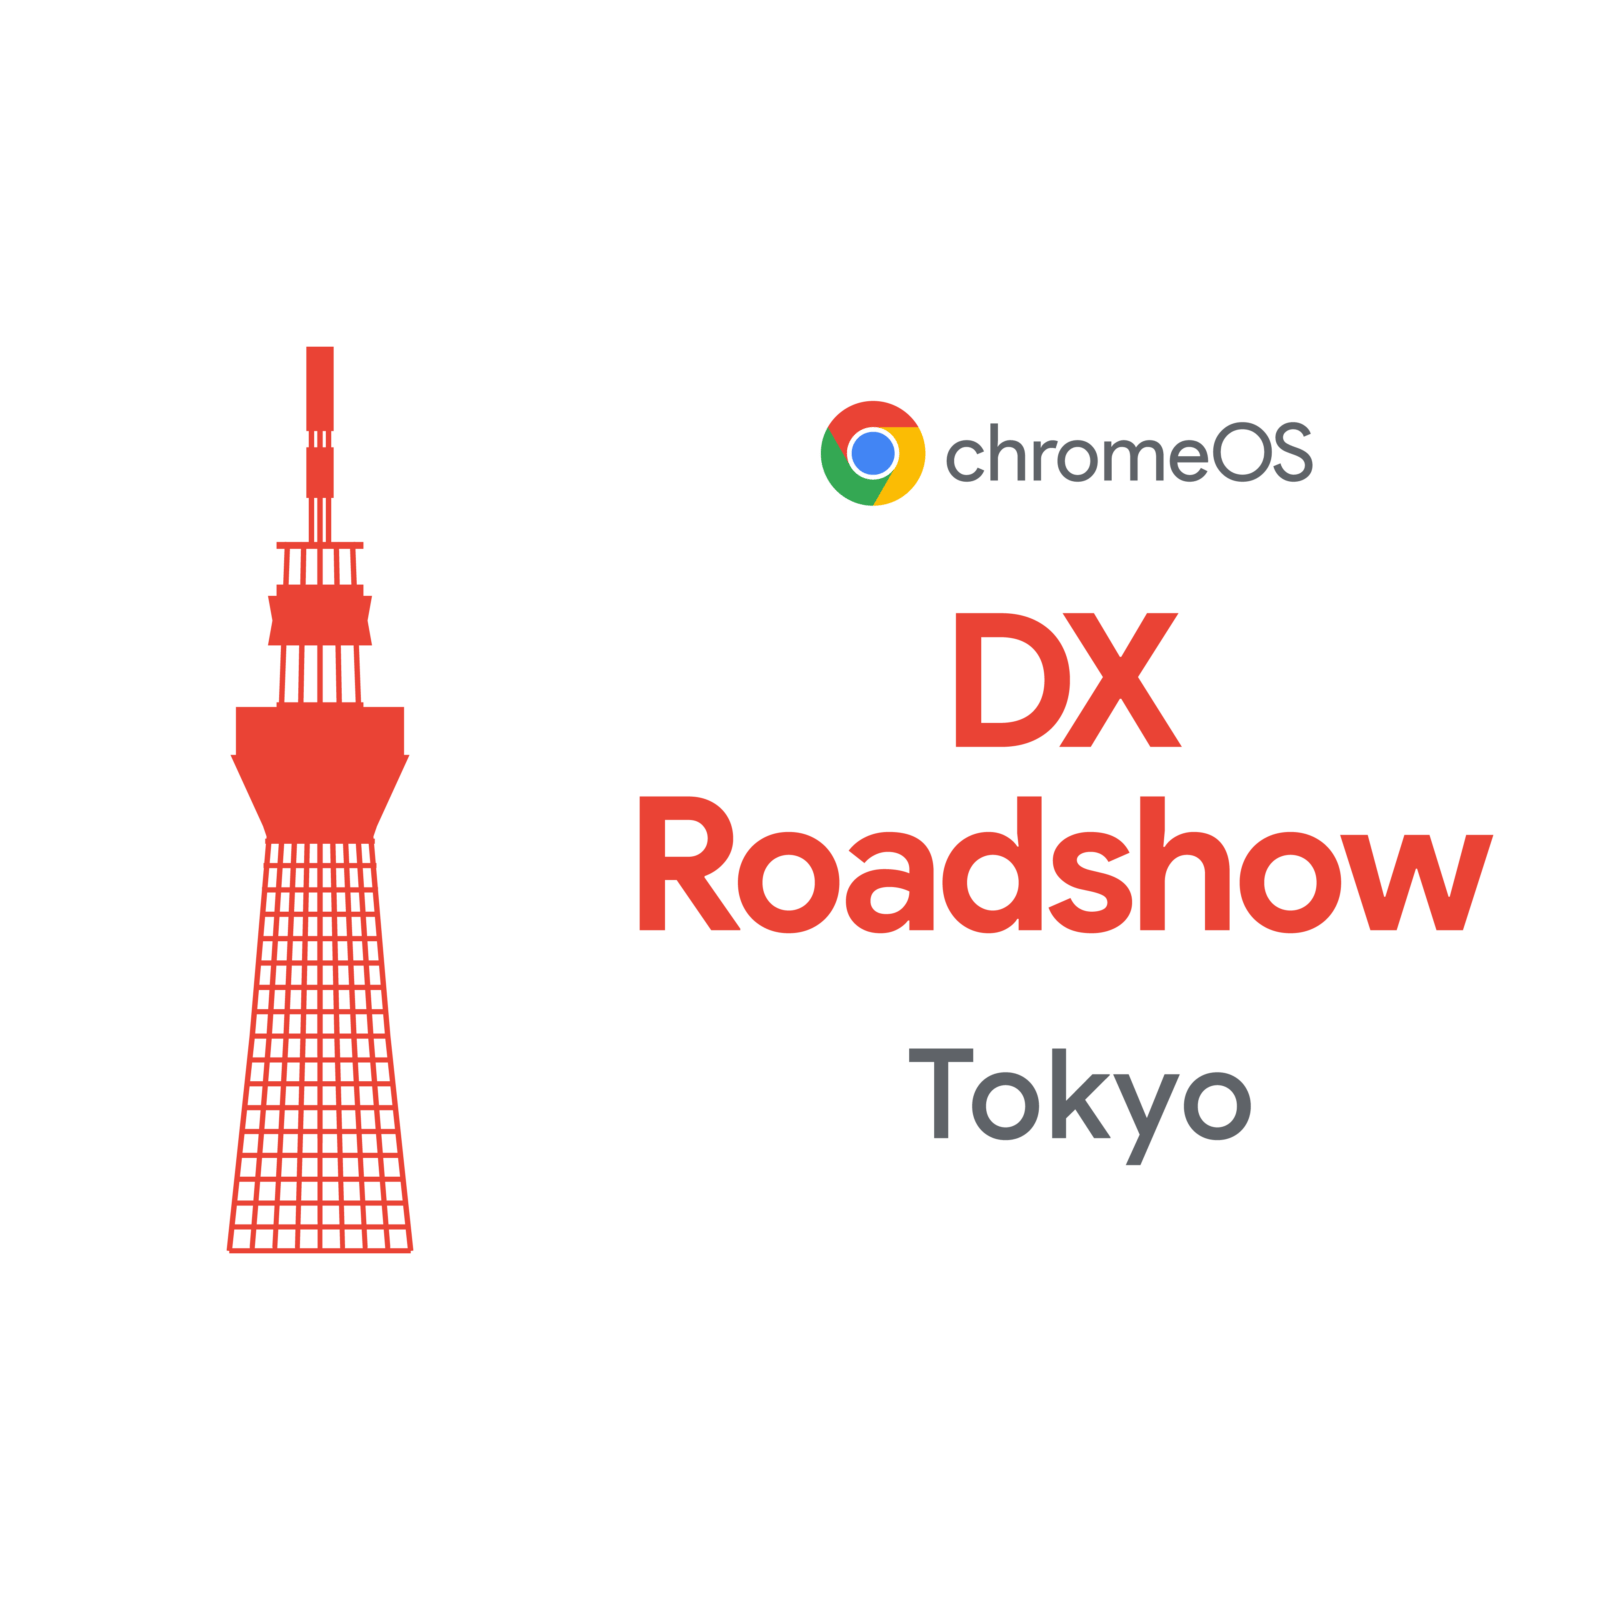 [ChromeOS] ChromeOS DX Roadshow Tokyo